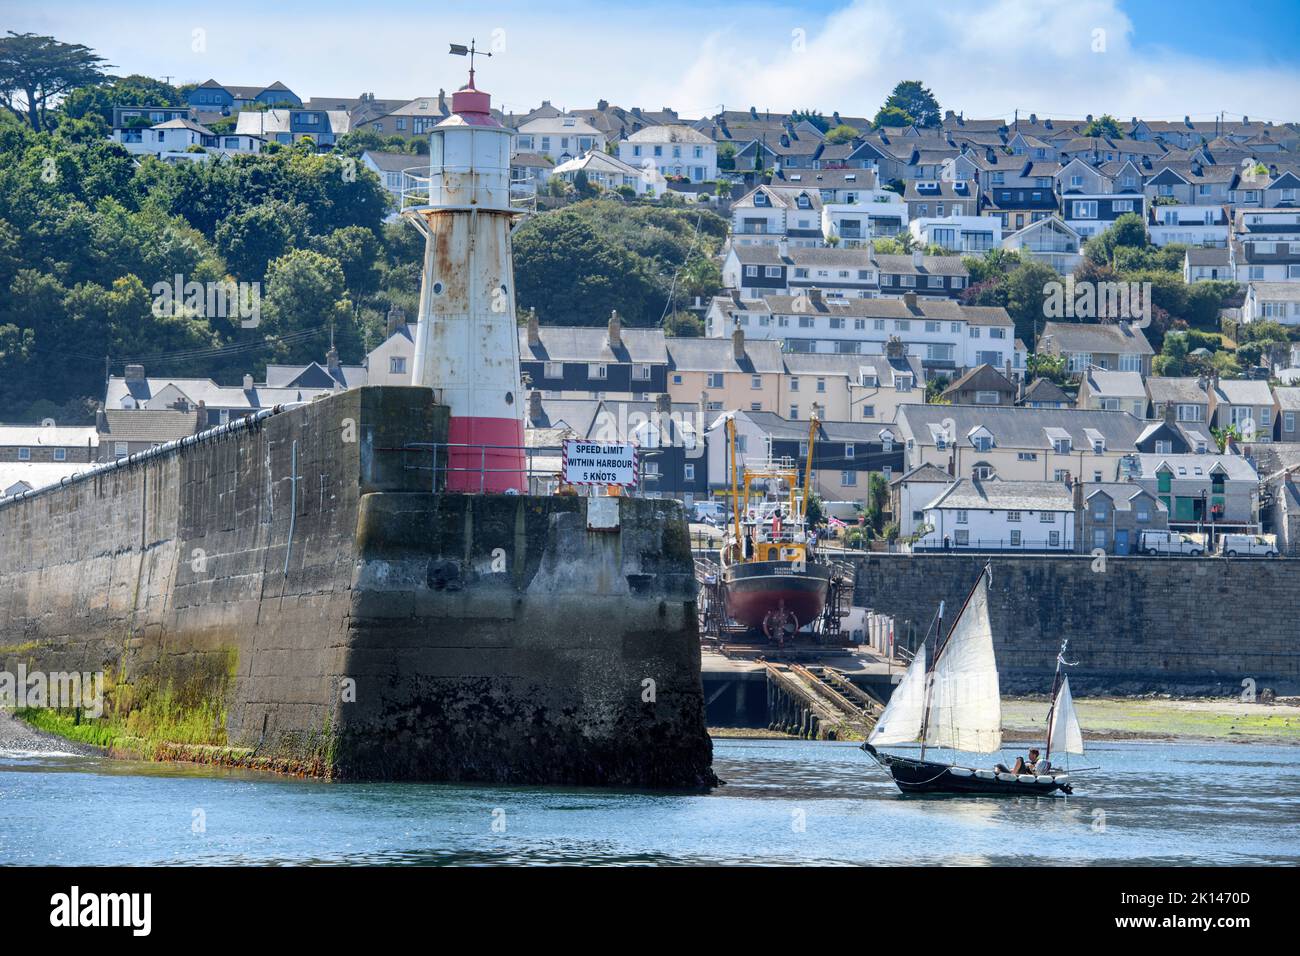 Un bateau à voile quitte le port de Newlyn à Cornwall, au Royaume-Uni - le niveau moyen de la mer à Newlyn, Ordnance Datum Newlyn fournit la référence verticale de l'Ordnance su Banque D'Images